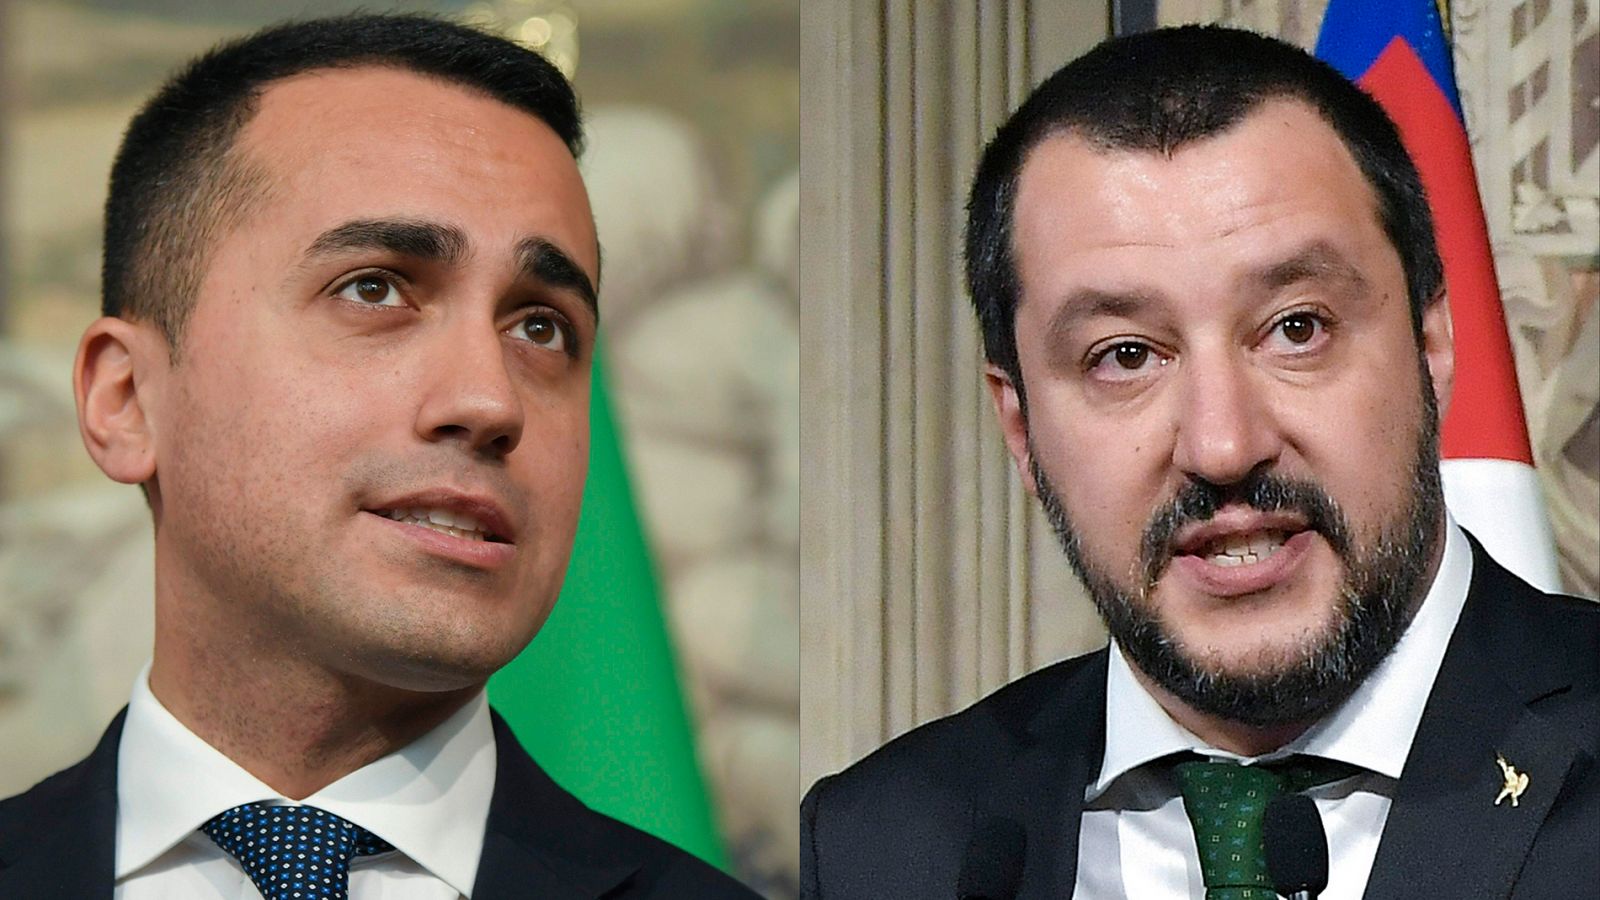 Los líderes del M5S, Luigi di Maio, y la Liga Norte, Matteo Salvini